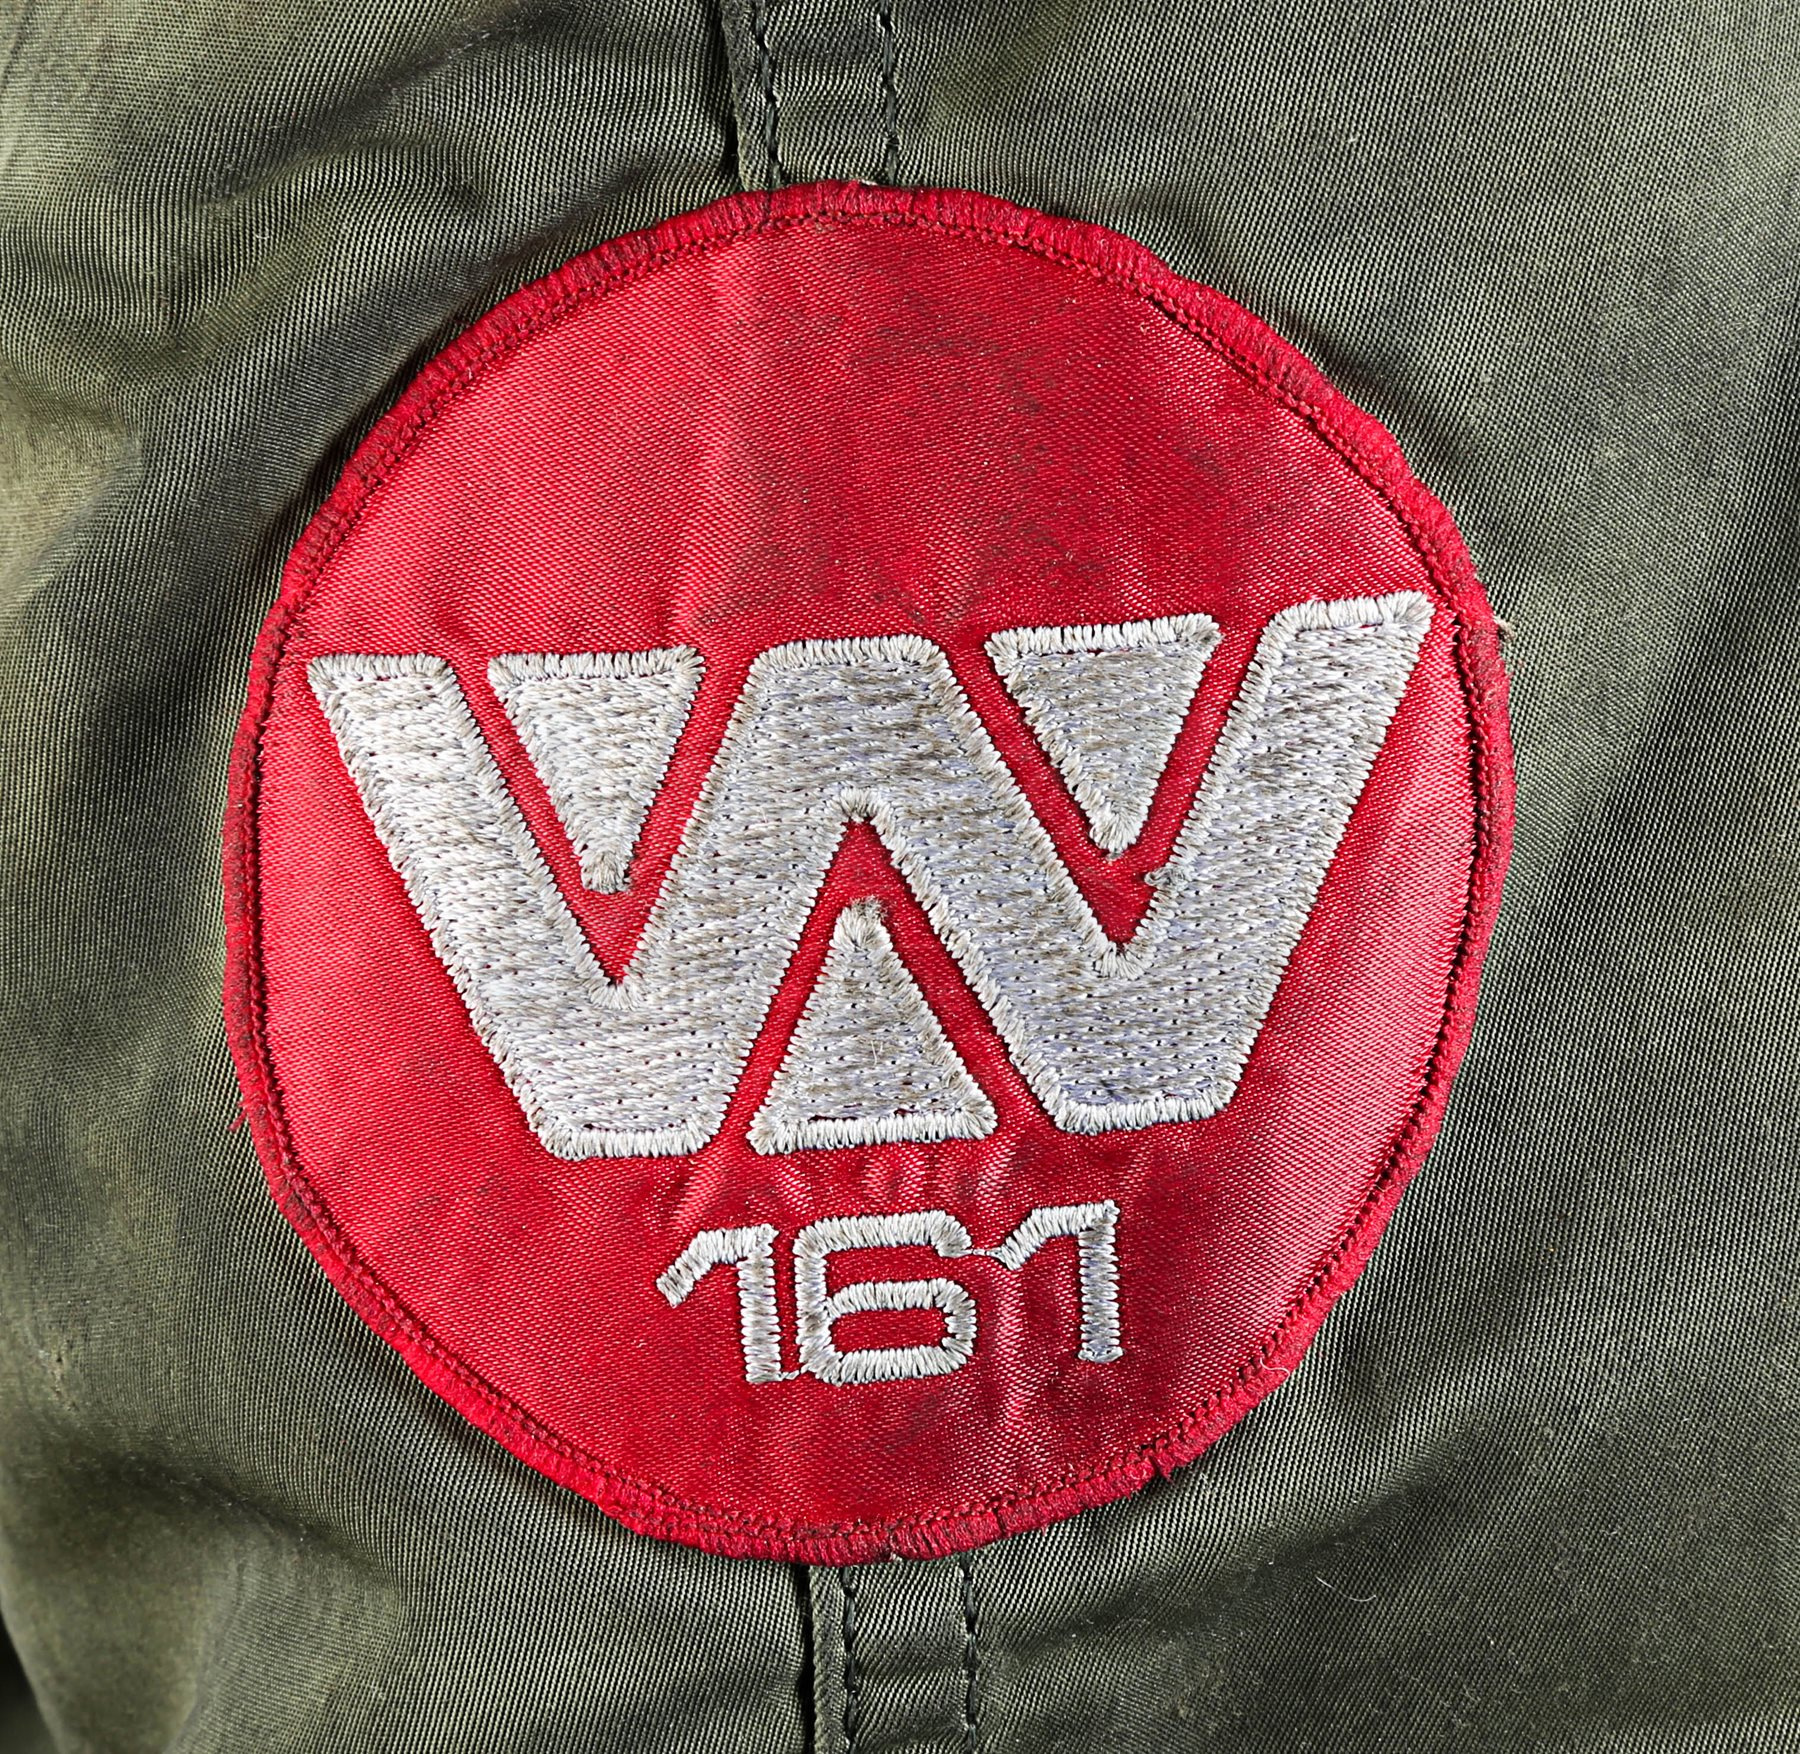 Alien 3 jacket red patch.jpg